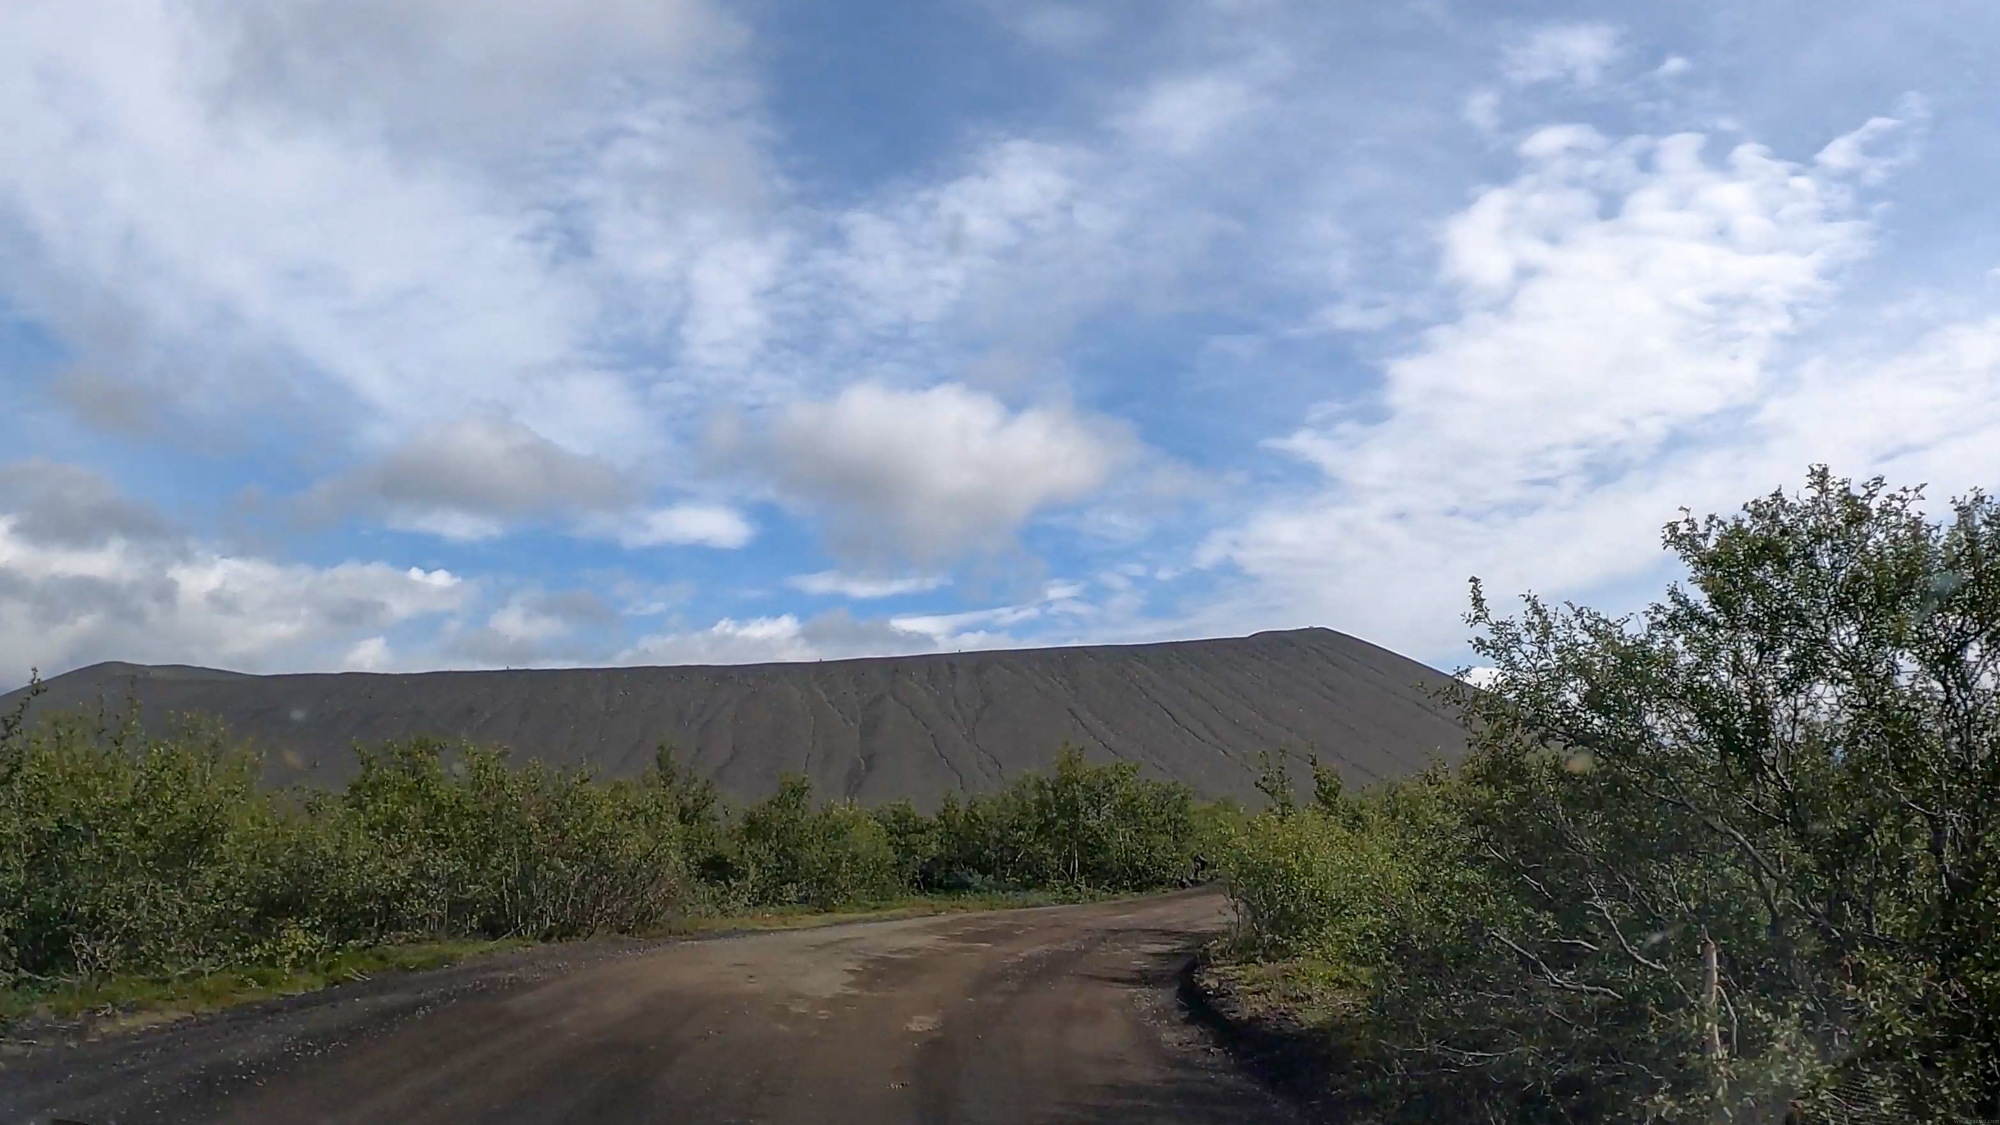 Príchod po ceste a pohľad na kráter Hverfjall z auta.